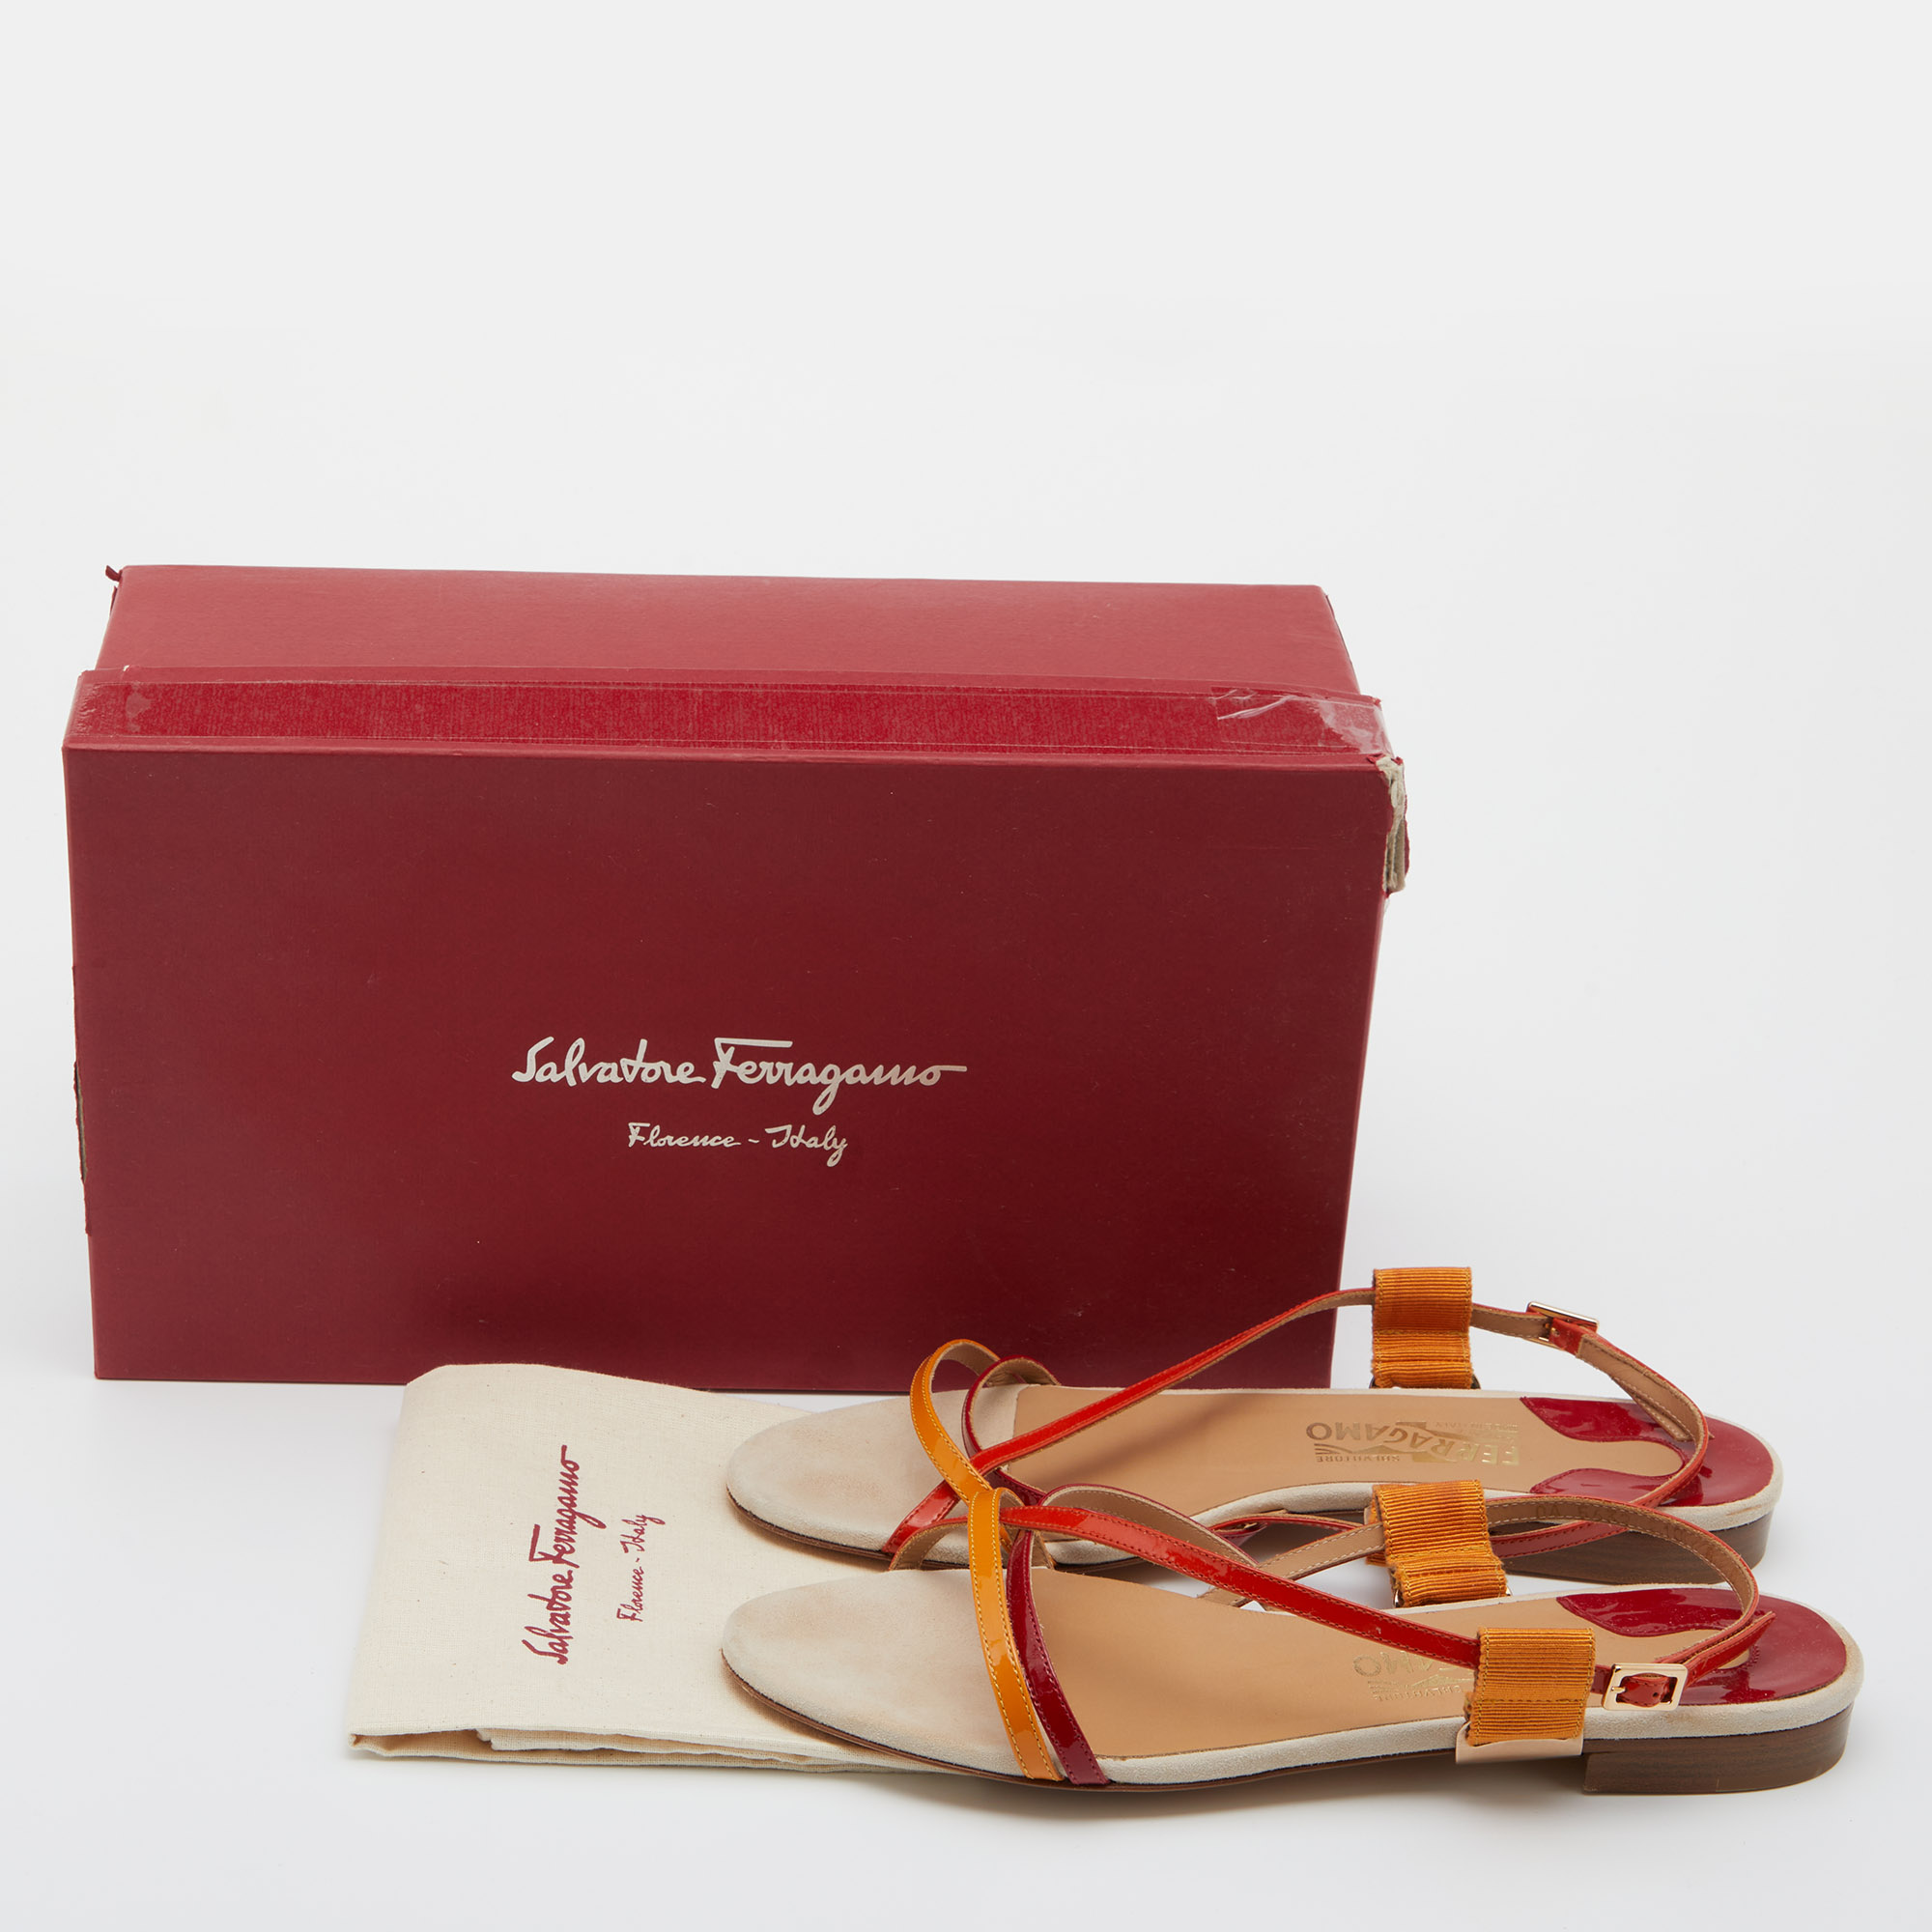 Salvatore Ferragamo Multicolor Patent Leather Strappy Slingback Flat Sandals Size 38.5